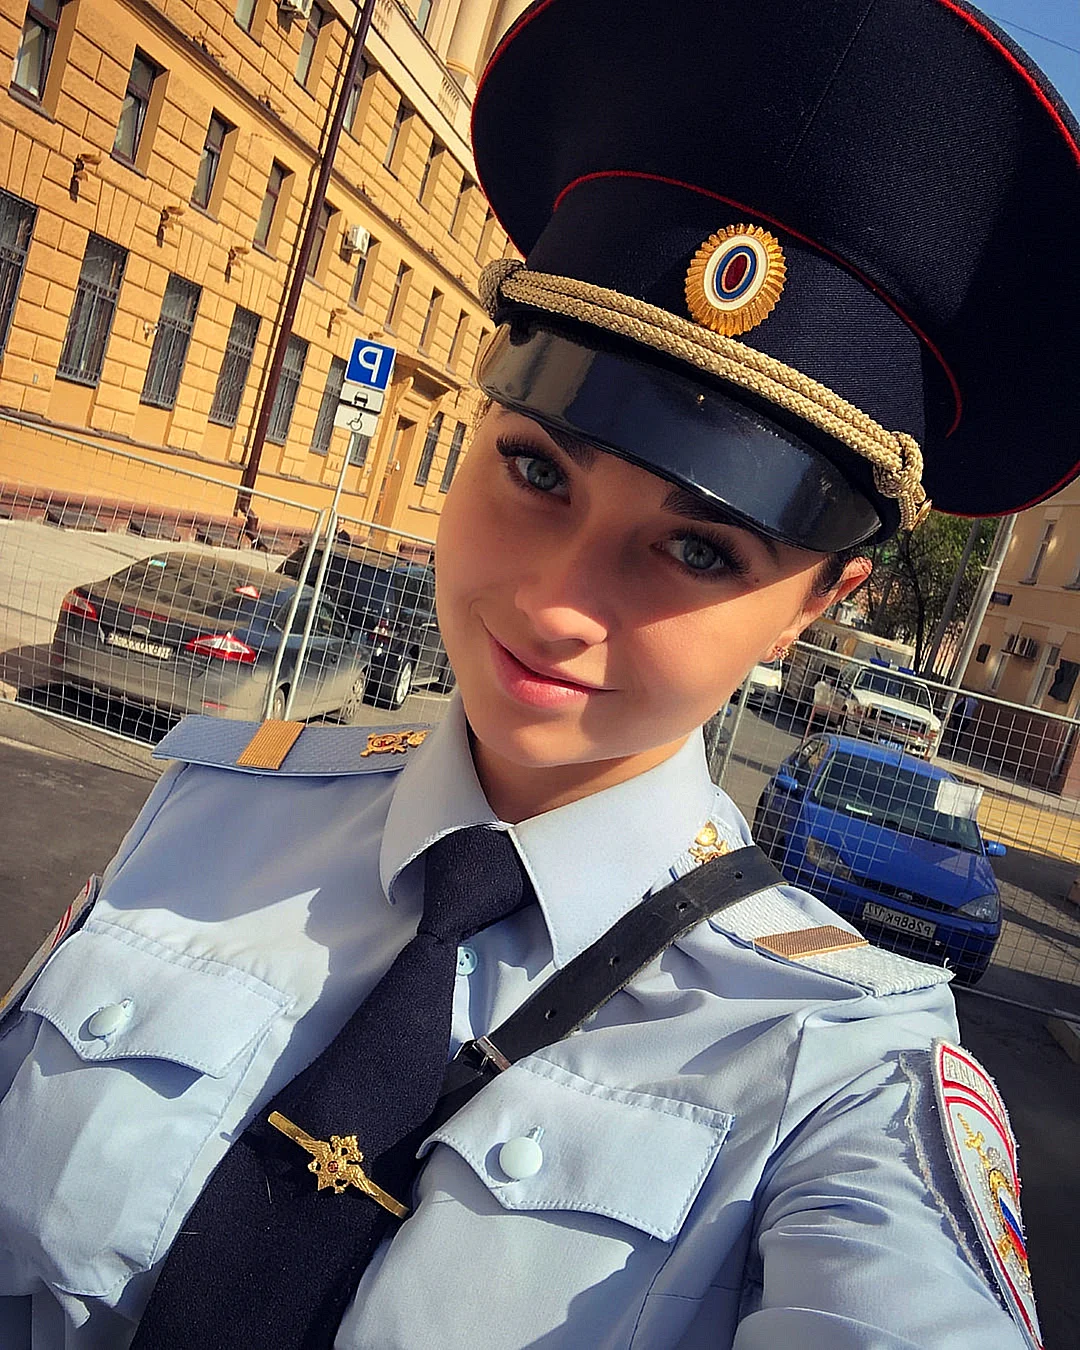 Девушка полицейский